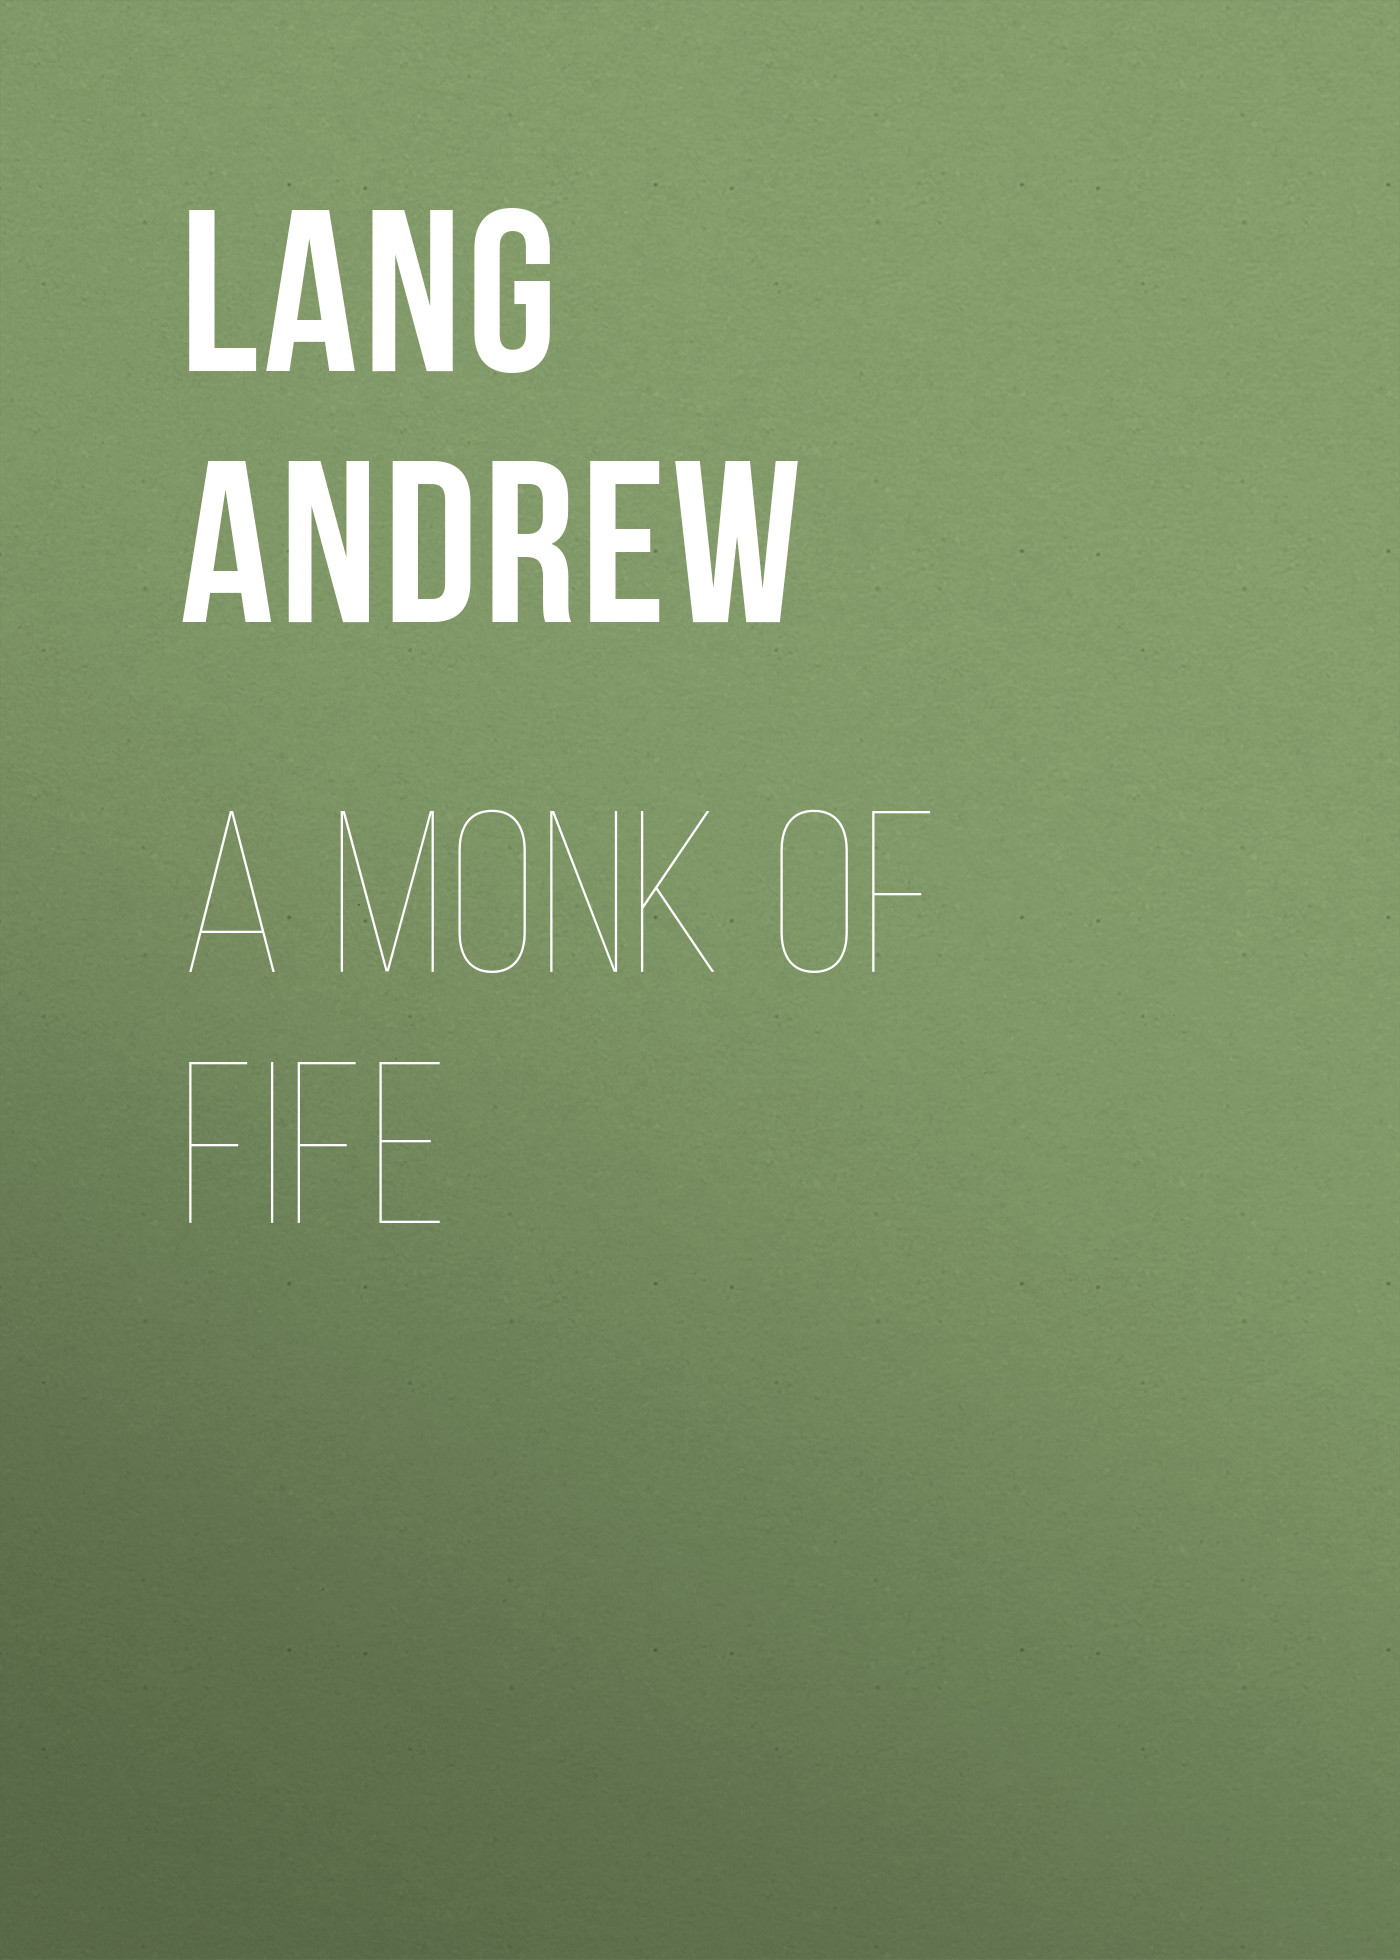 Книга A Monk of Fife из серии , созданная Andrew Lang, может относится к жанру Зарубежная старинная литература, Зарубежная классика. Стоимость электронной книги A Monk of Fife с идентификатором 25228964 составляет 0 руб.